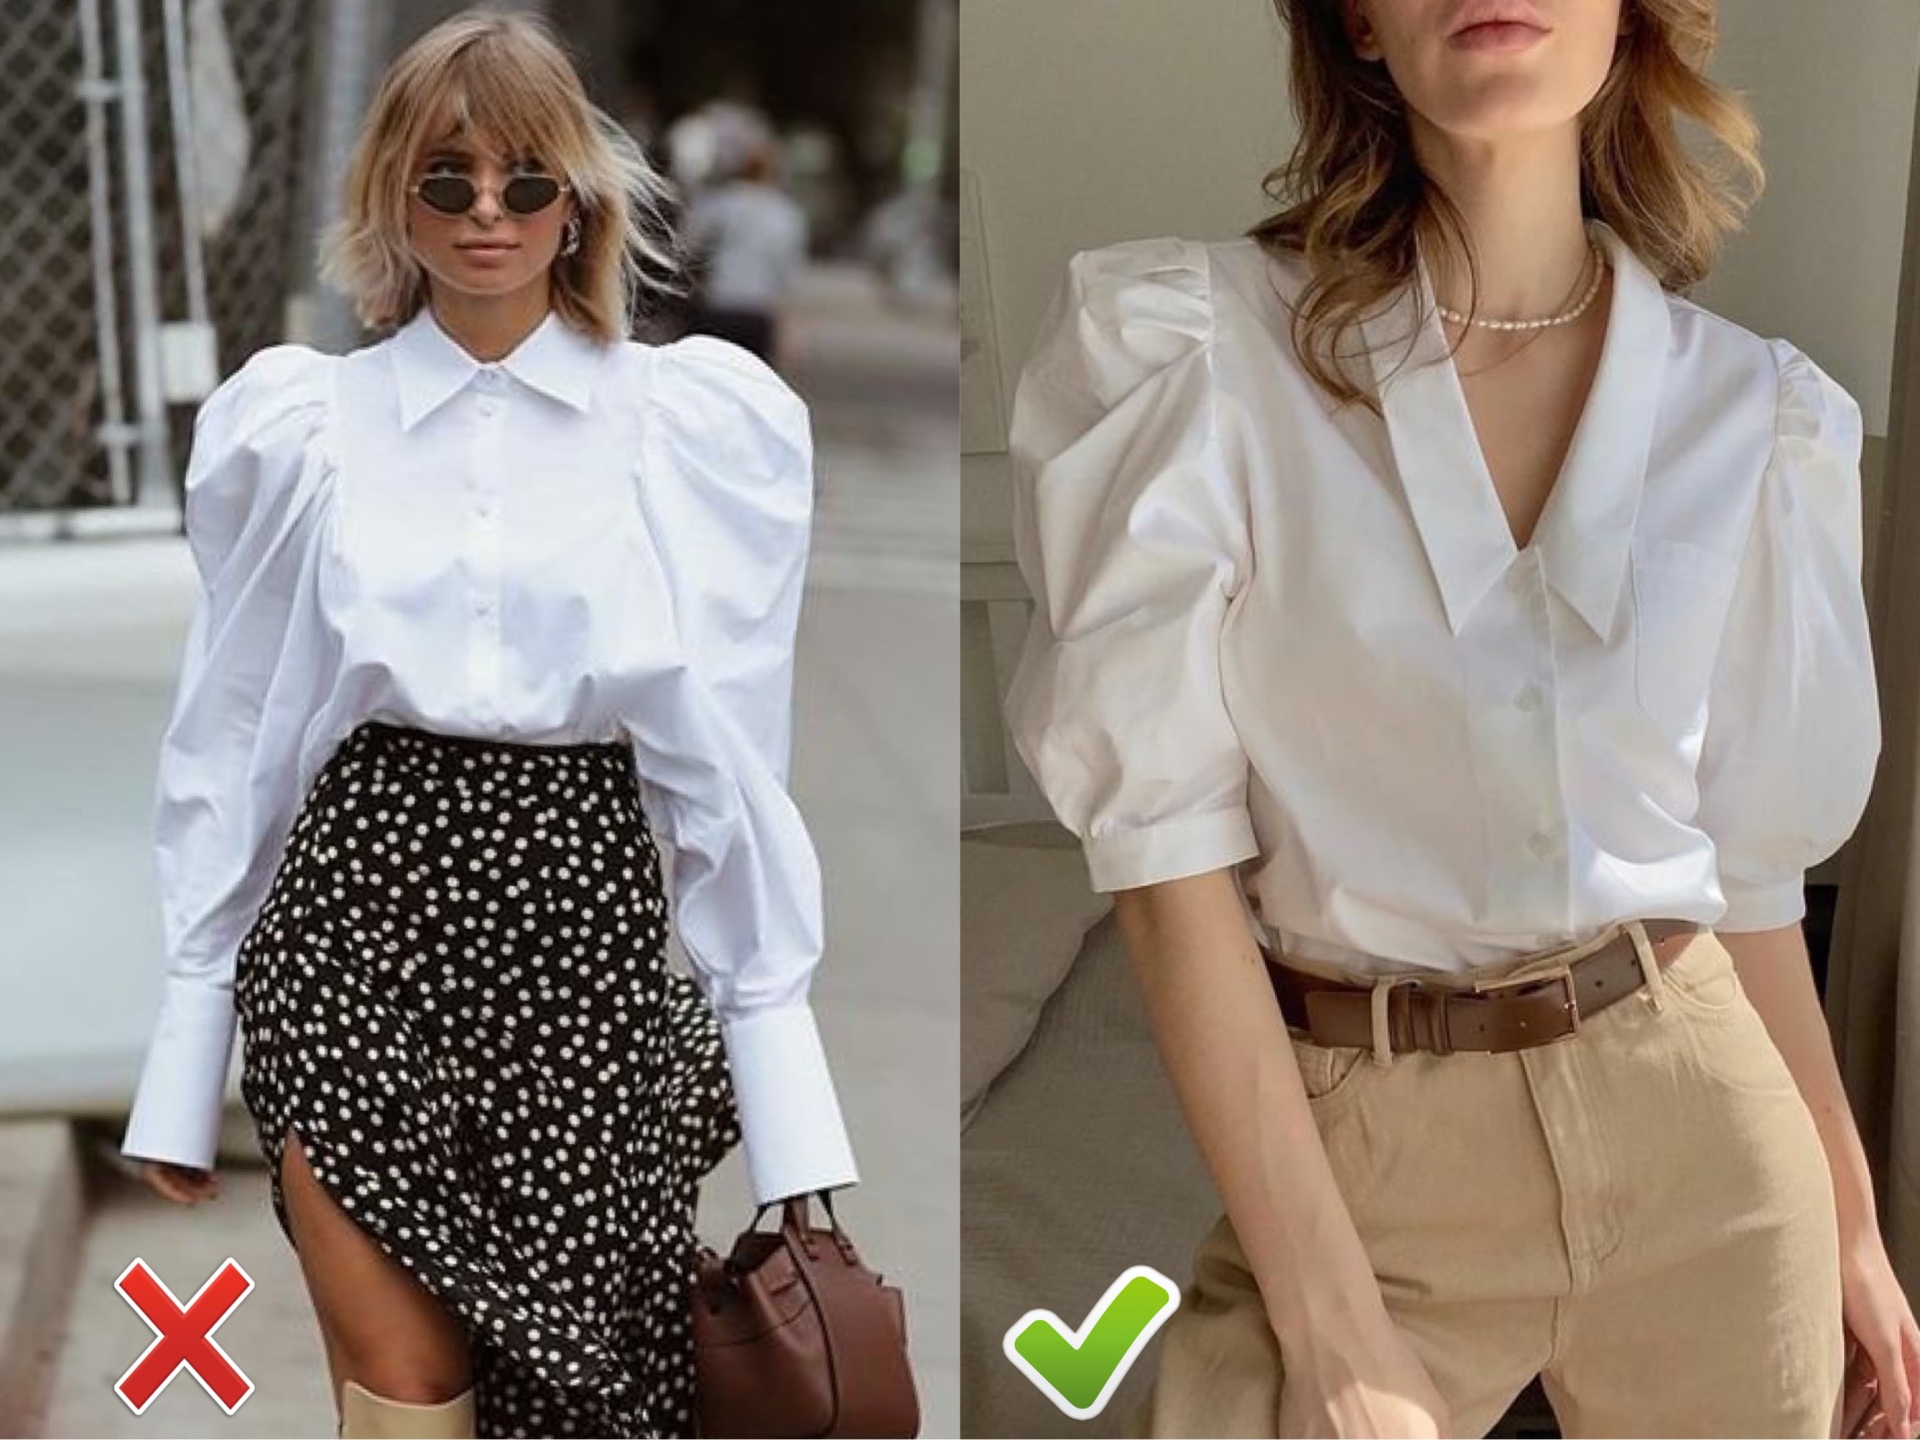 Áo blouse là một lựa chọn giúp che khuyết điểm bắp tay thô và to khá hiệu quả nhưng lại dễ 'phản chủ' nếu bạn lựa chọn những chiếc áo có tay phồng quá to.